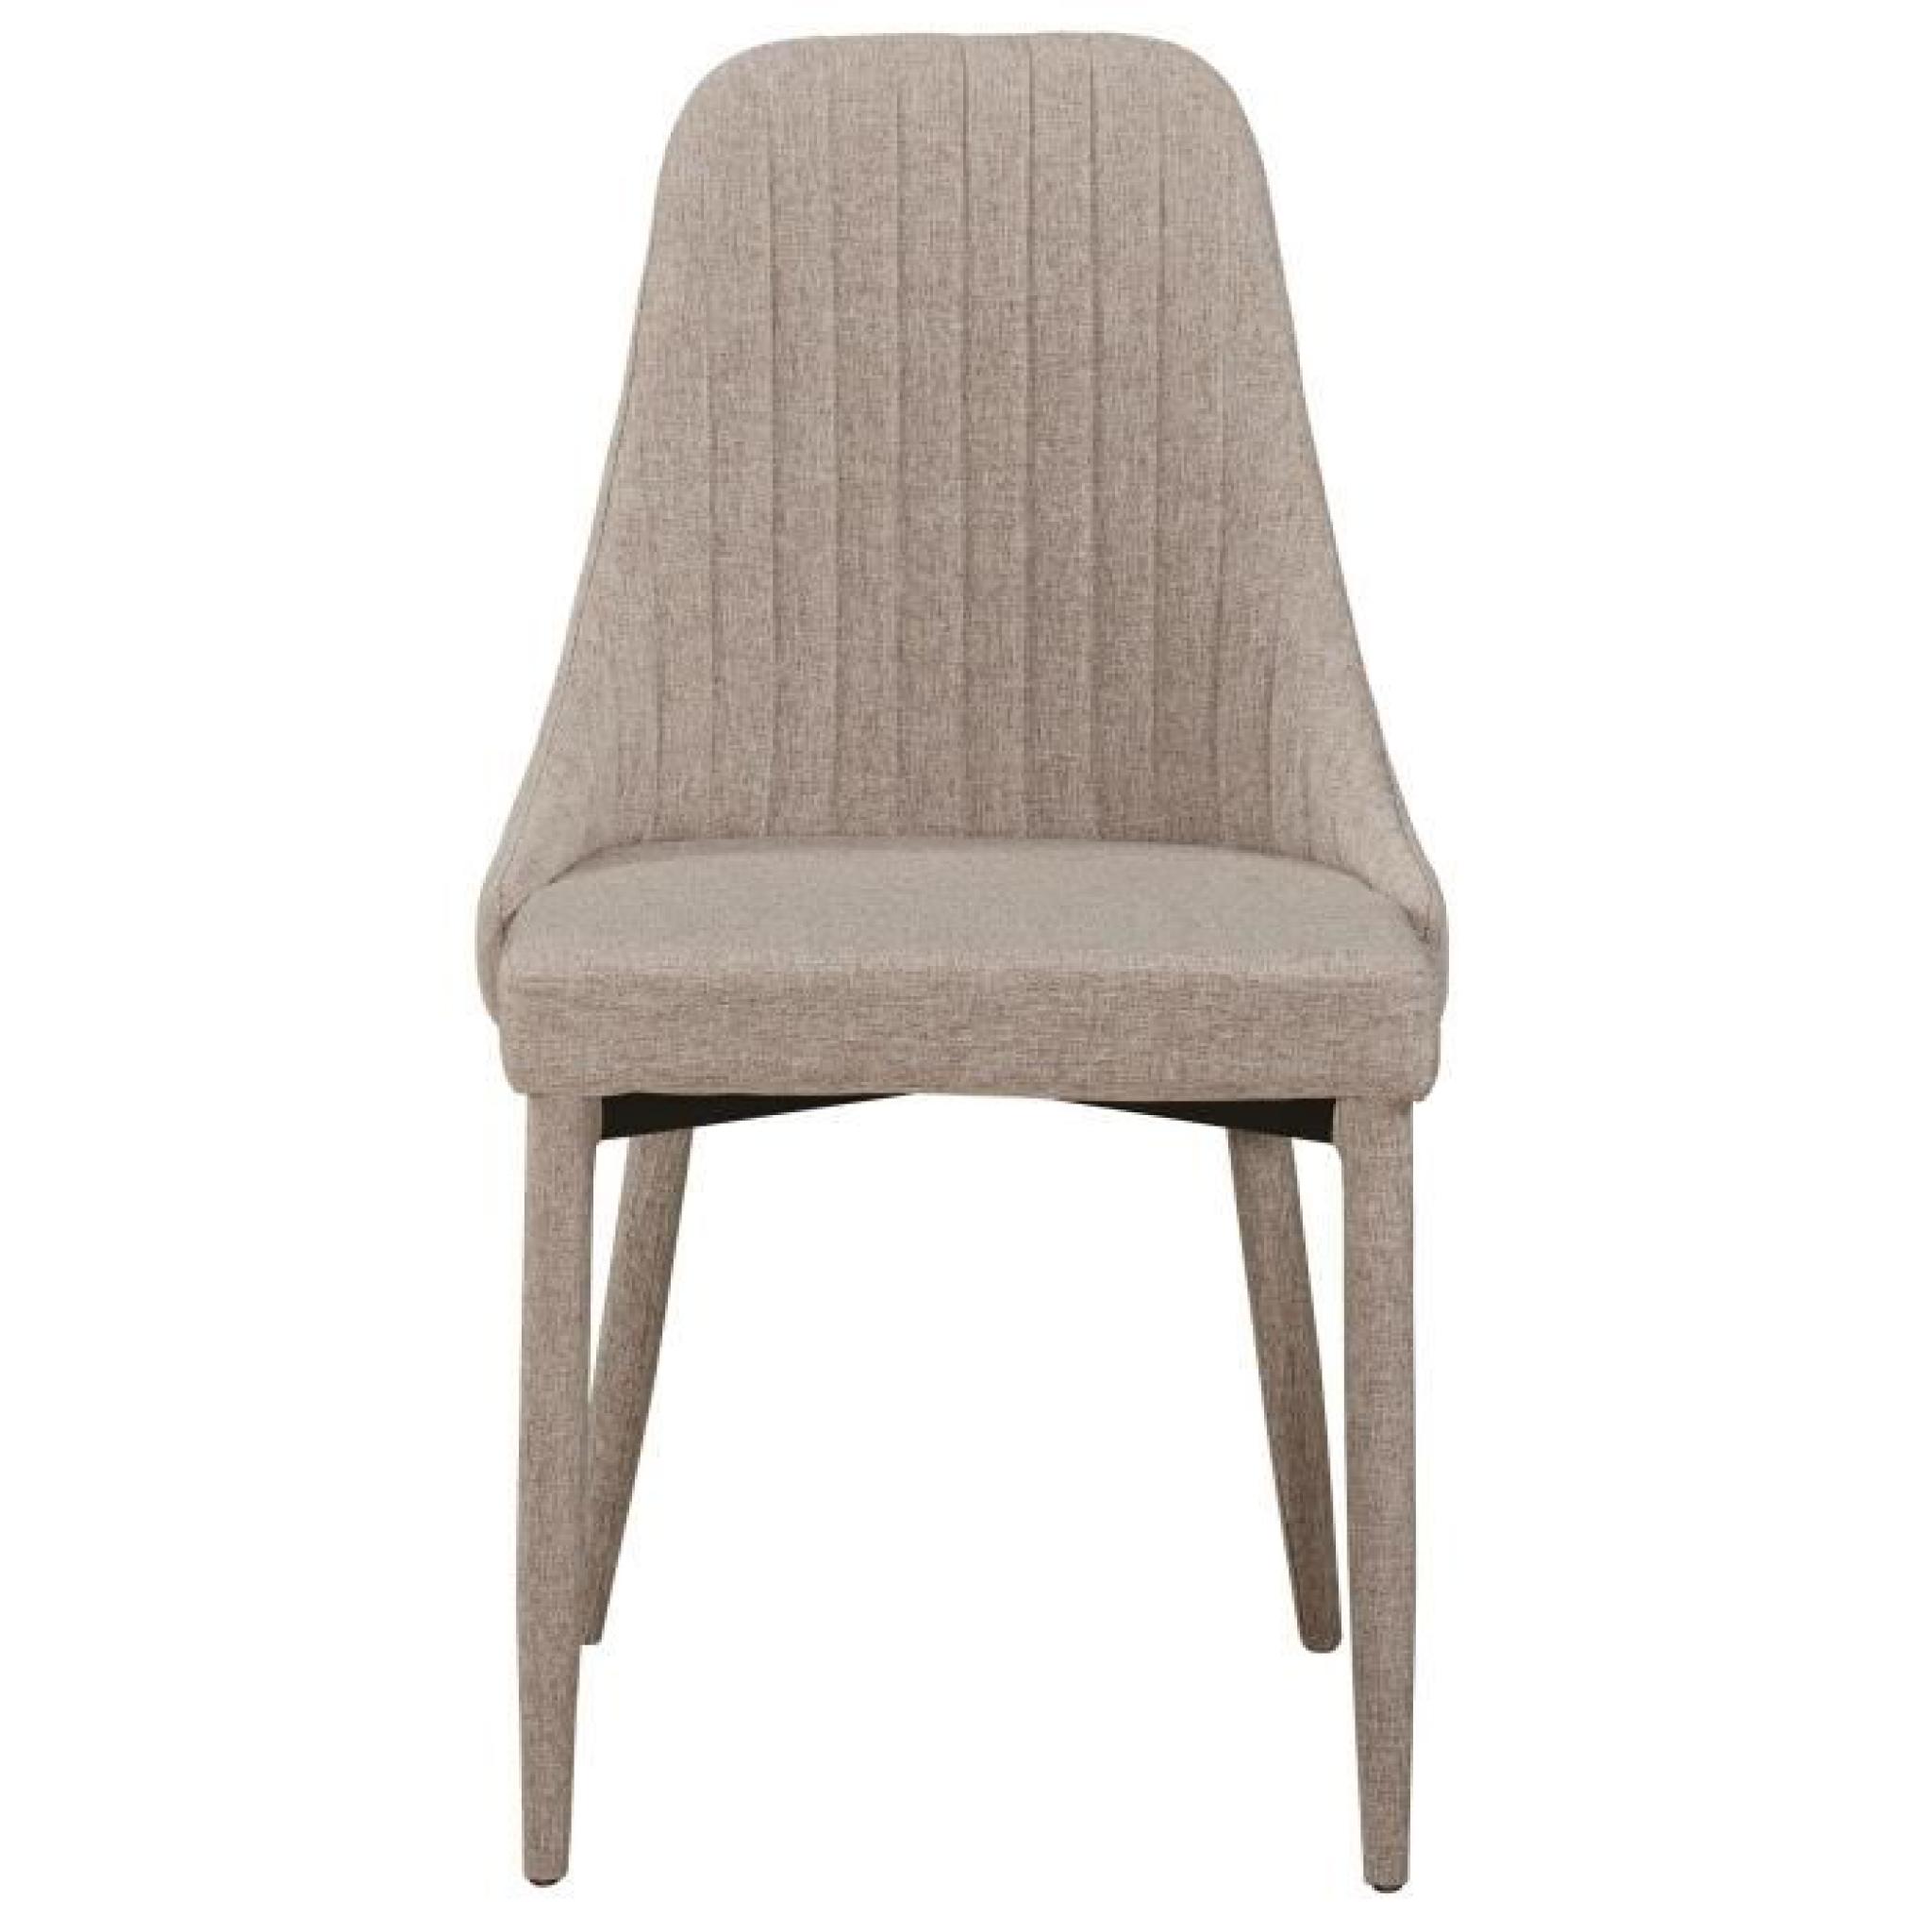 Chaise en tissus design couture verticale coloris beige pas cher